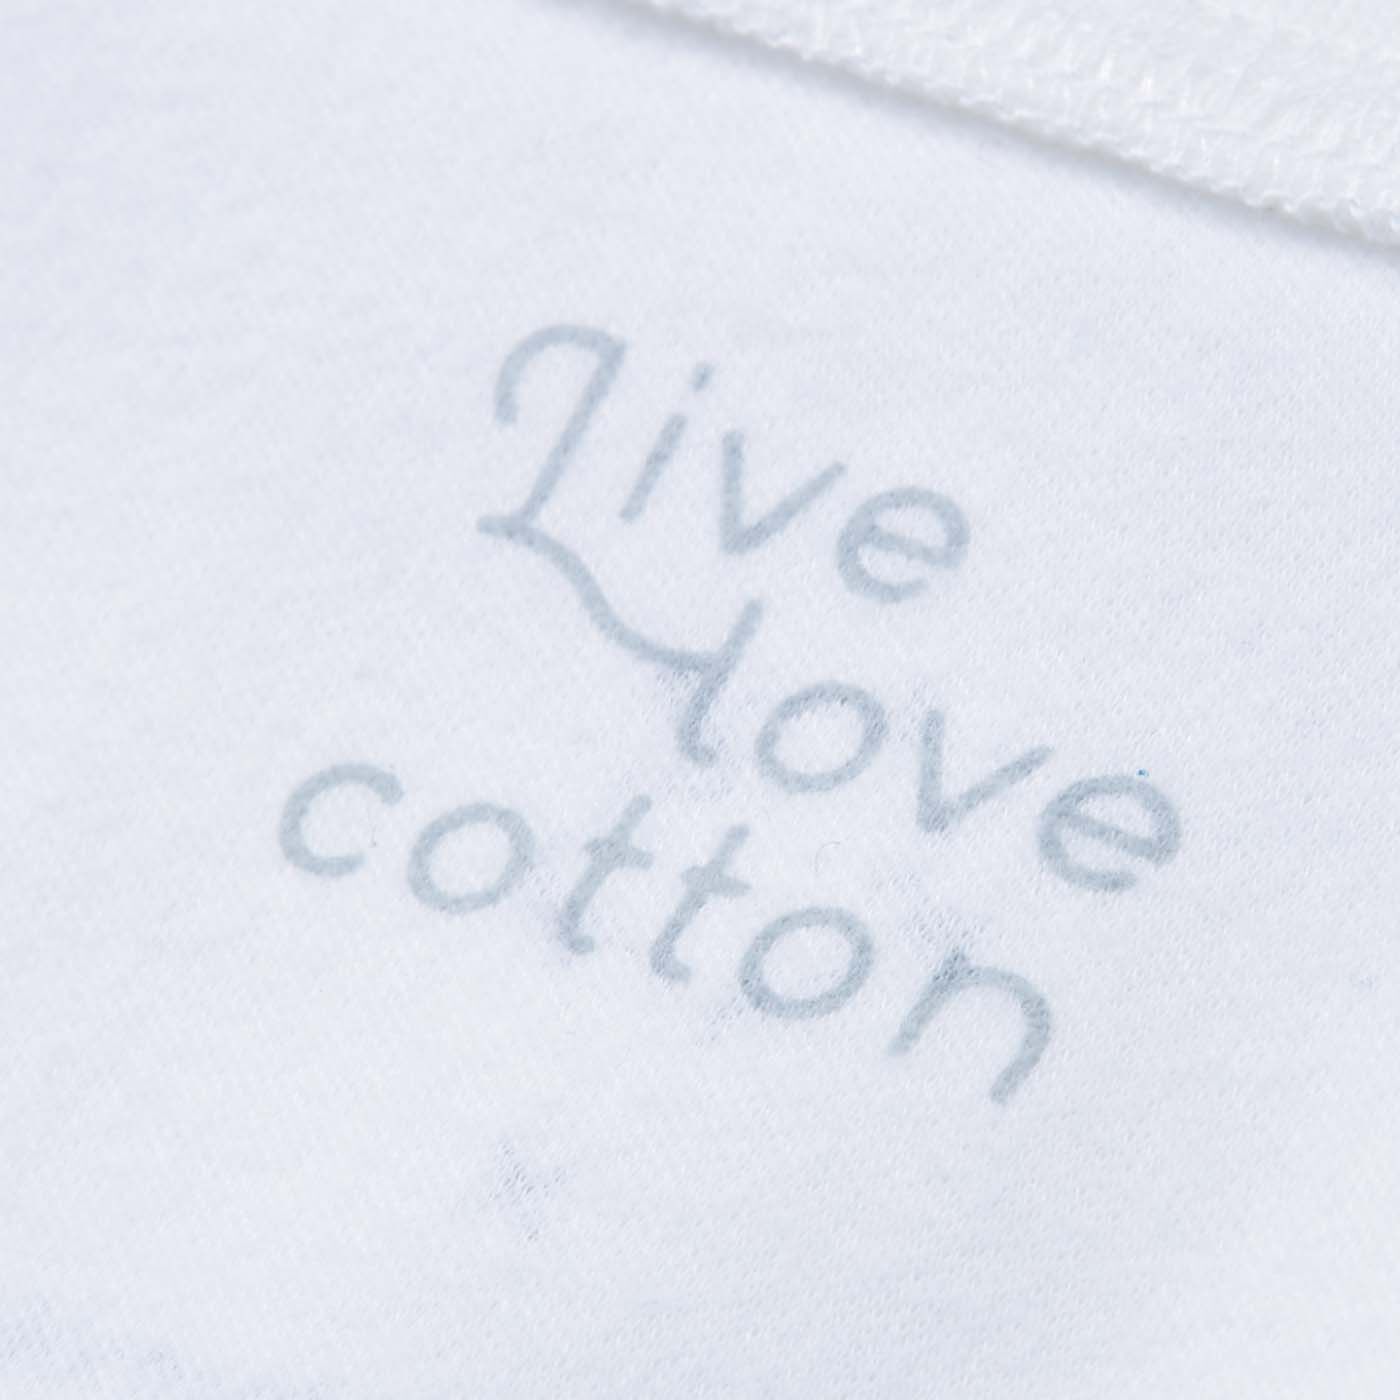 el:ment|Live love cottonプロジェクト　el:ment×Yuko Yamamoto　平和が実る瞬間 内側ふんわりやわらか心地オーガニックコットンのロングTトップスの会|背面内側には、Live love cottonのロゴ入り。